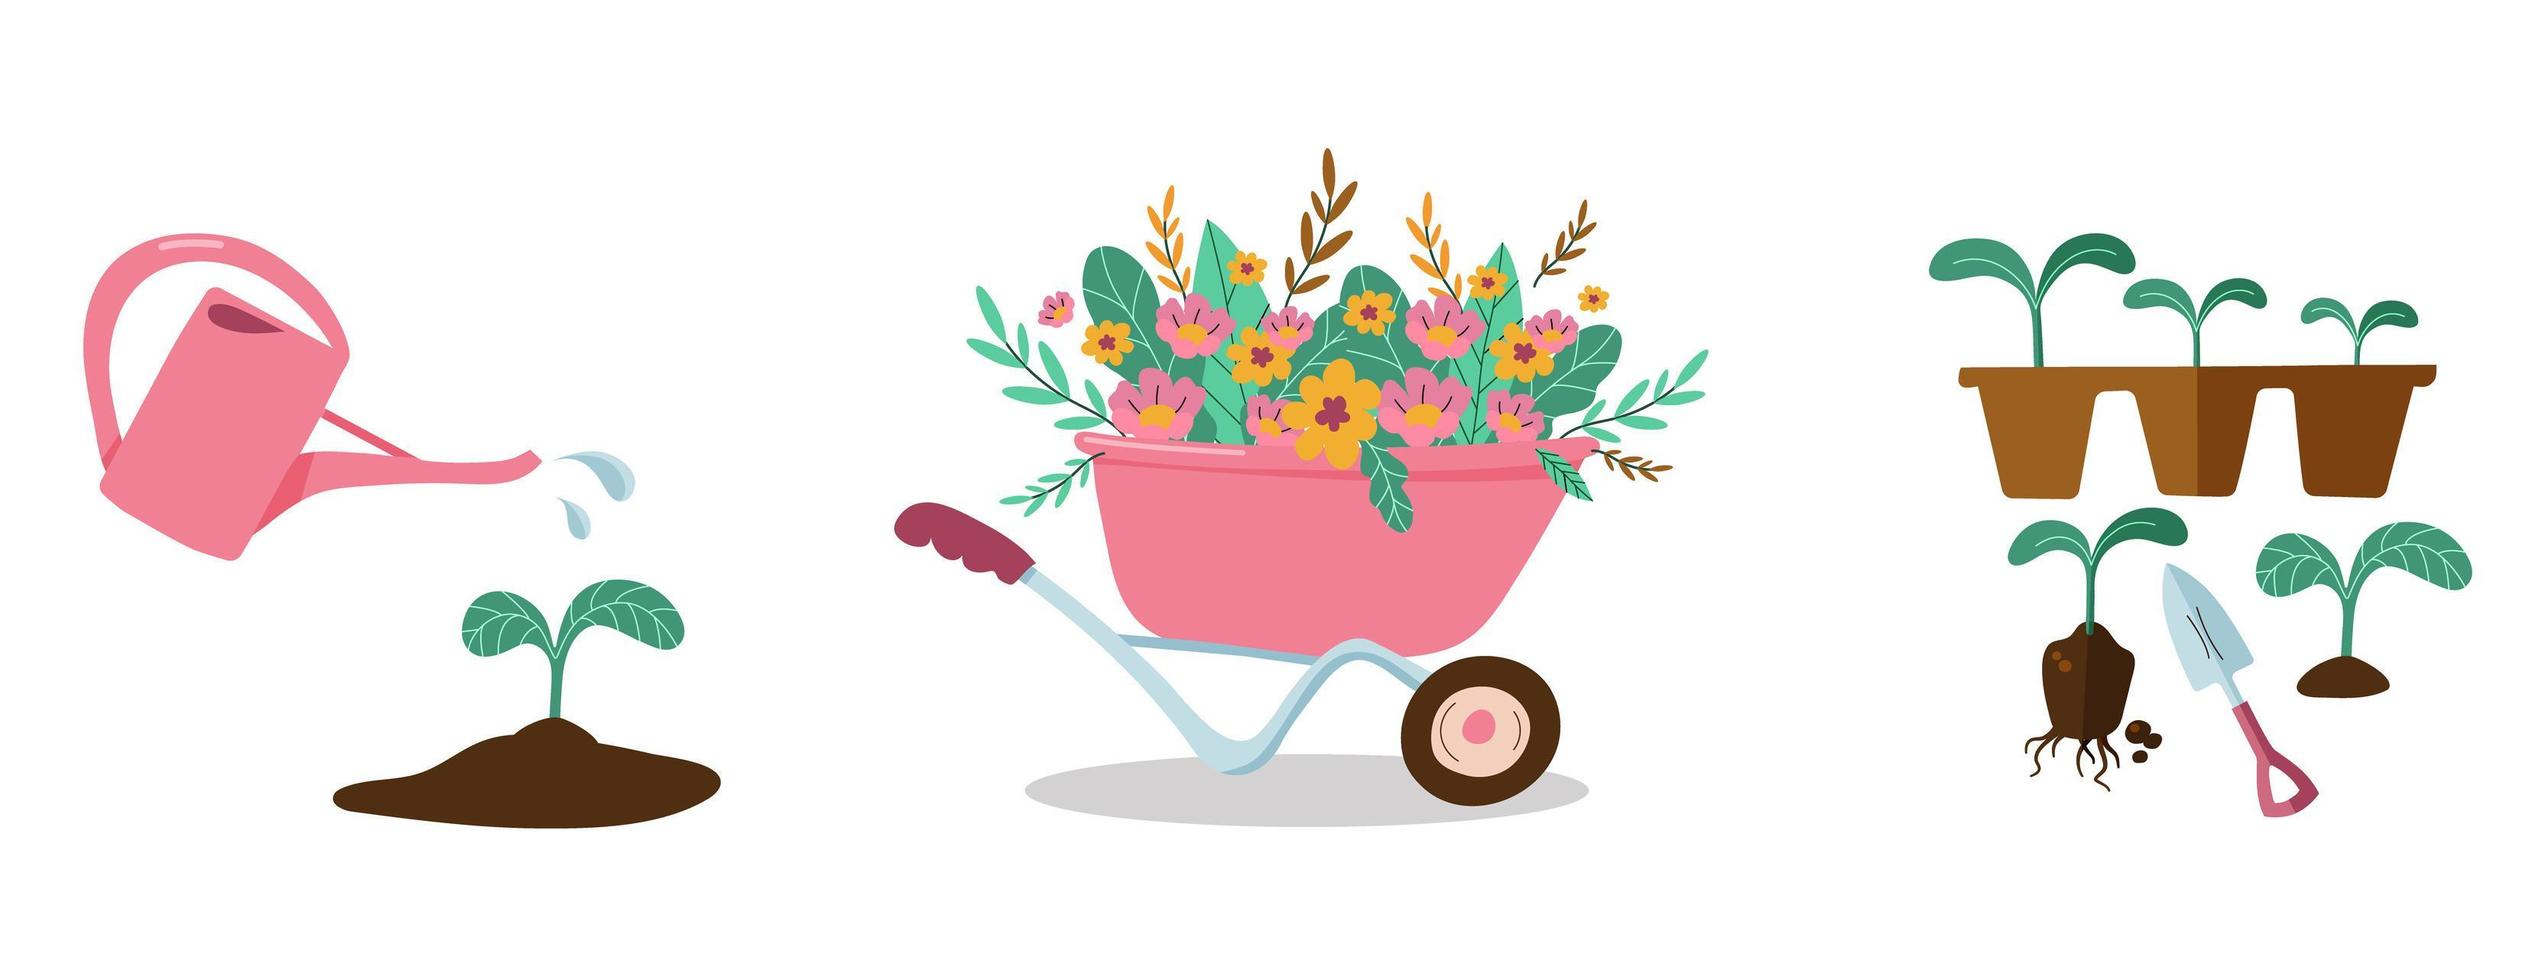 el concepto de herramientas de jardinería y equipos de jardinería. ilustración vectorial de artículos para jardinería. vector